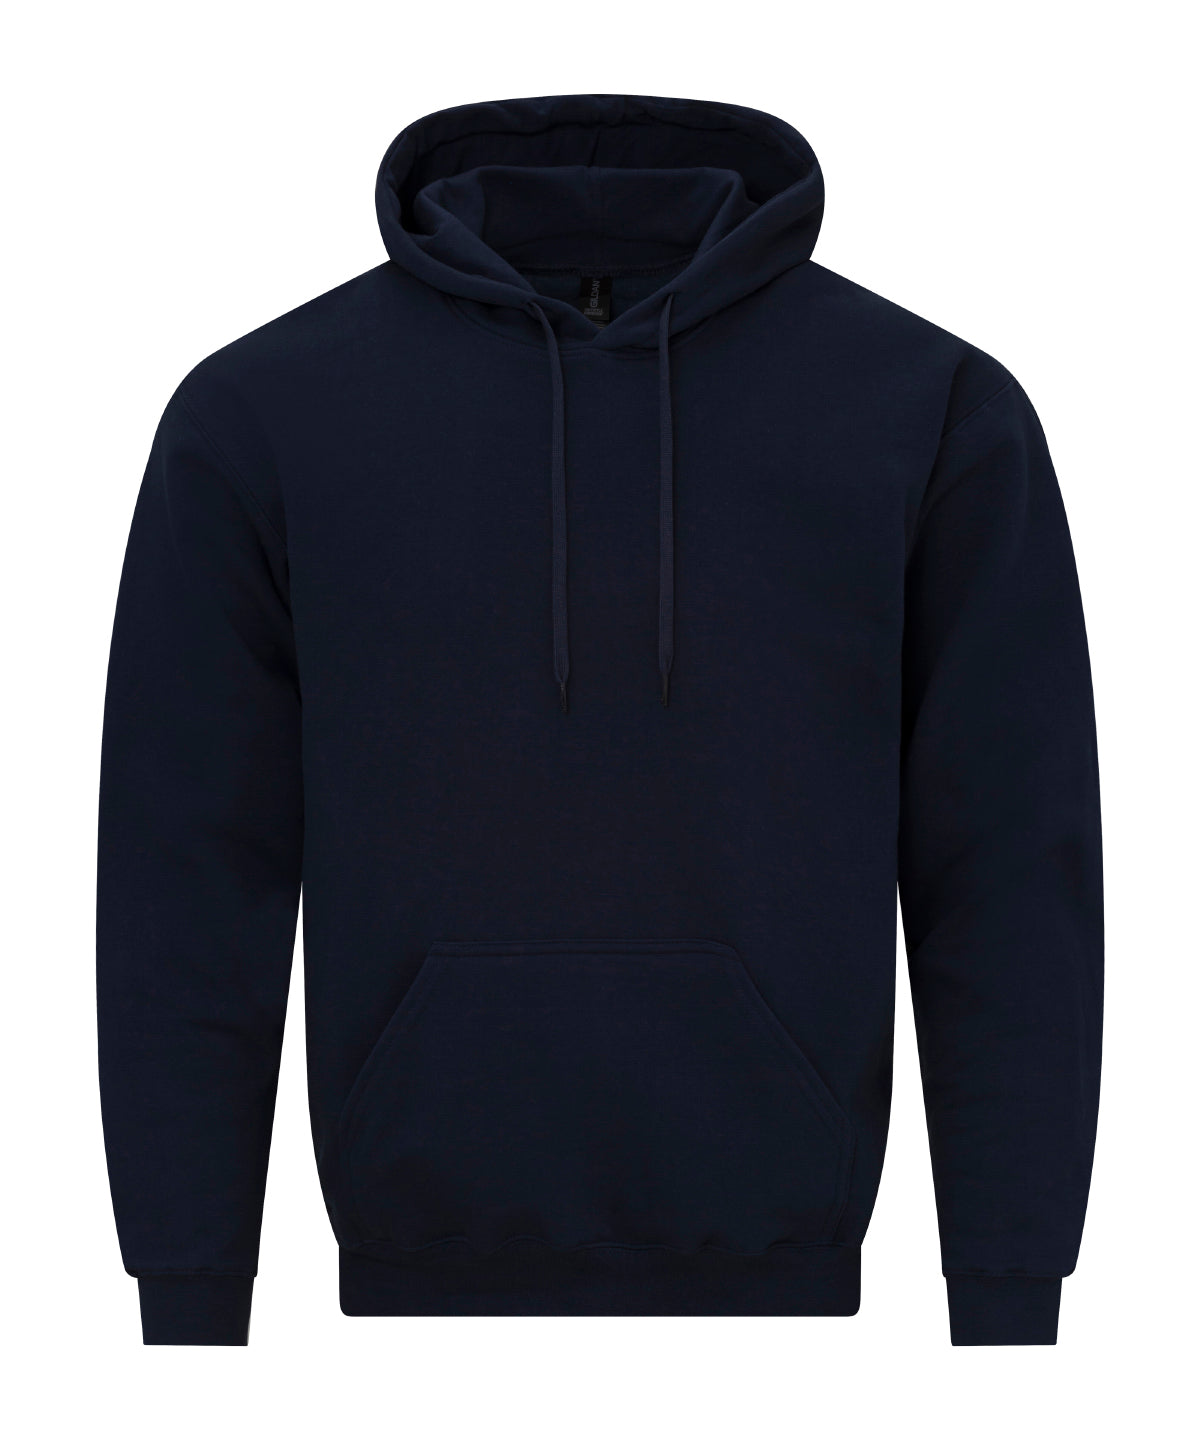 Gildan Softstyle midweight fleece adult hoodie Navy